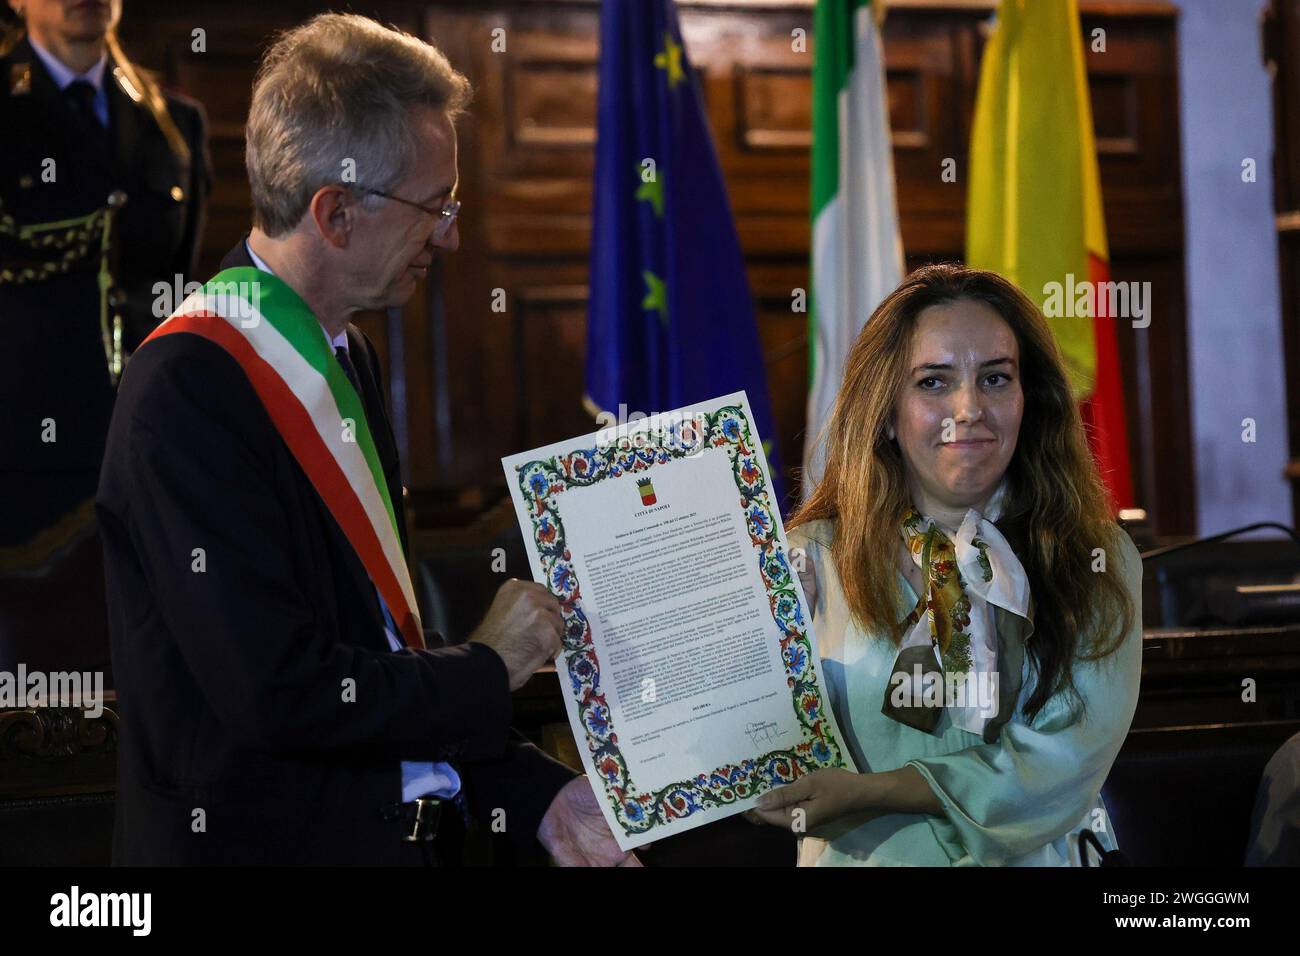 Le maire de Naples Gaetano Manfredi remet à Stella Moris le parchemin pour l'attribution de la citoyenneté d'honneur de Naples à Julian Assange. Banque D'Images